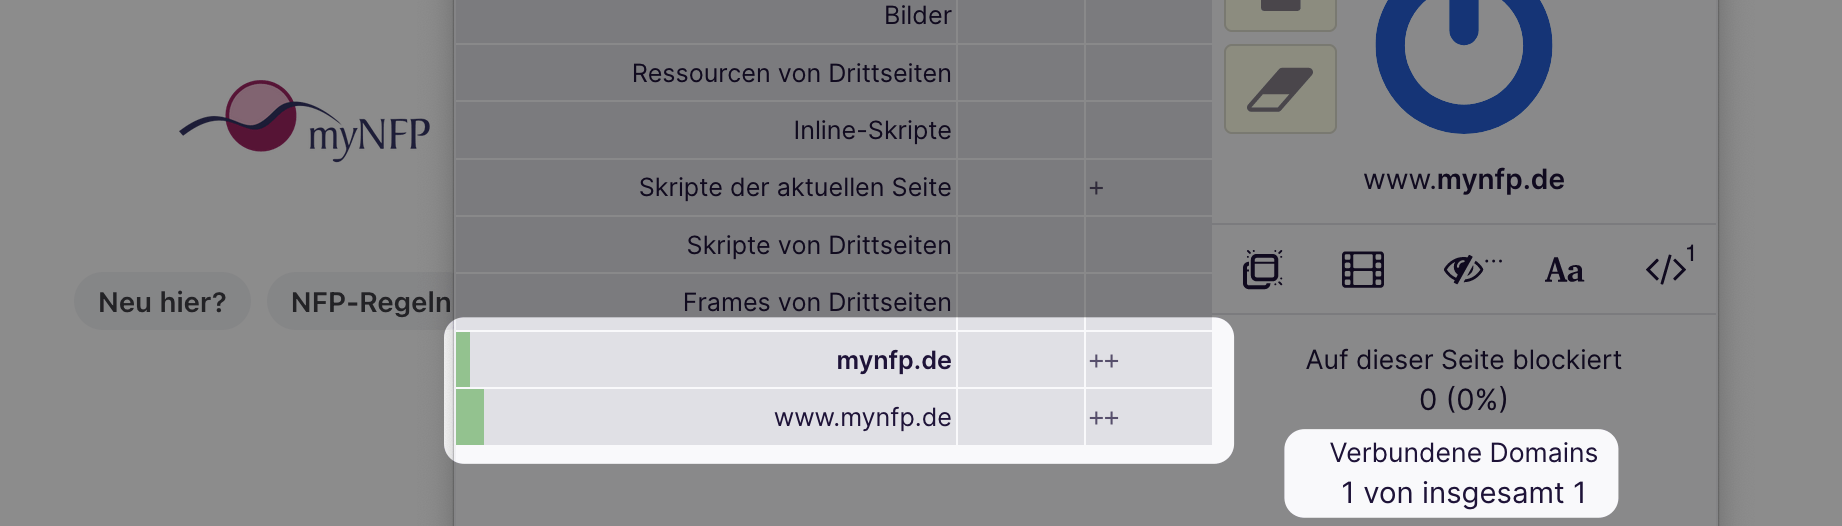 Screenshot des Firefox Addons uBlock Origin zeigt, dass keine externen Domains beim Aufruf von mynfp.de eingebunden werden.